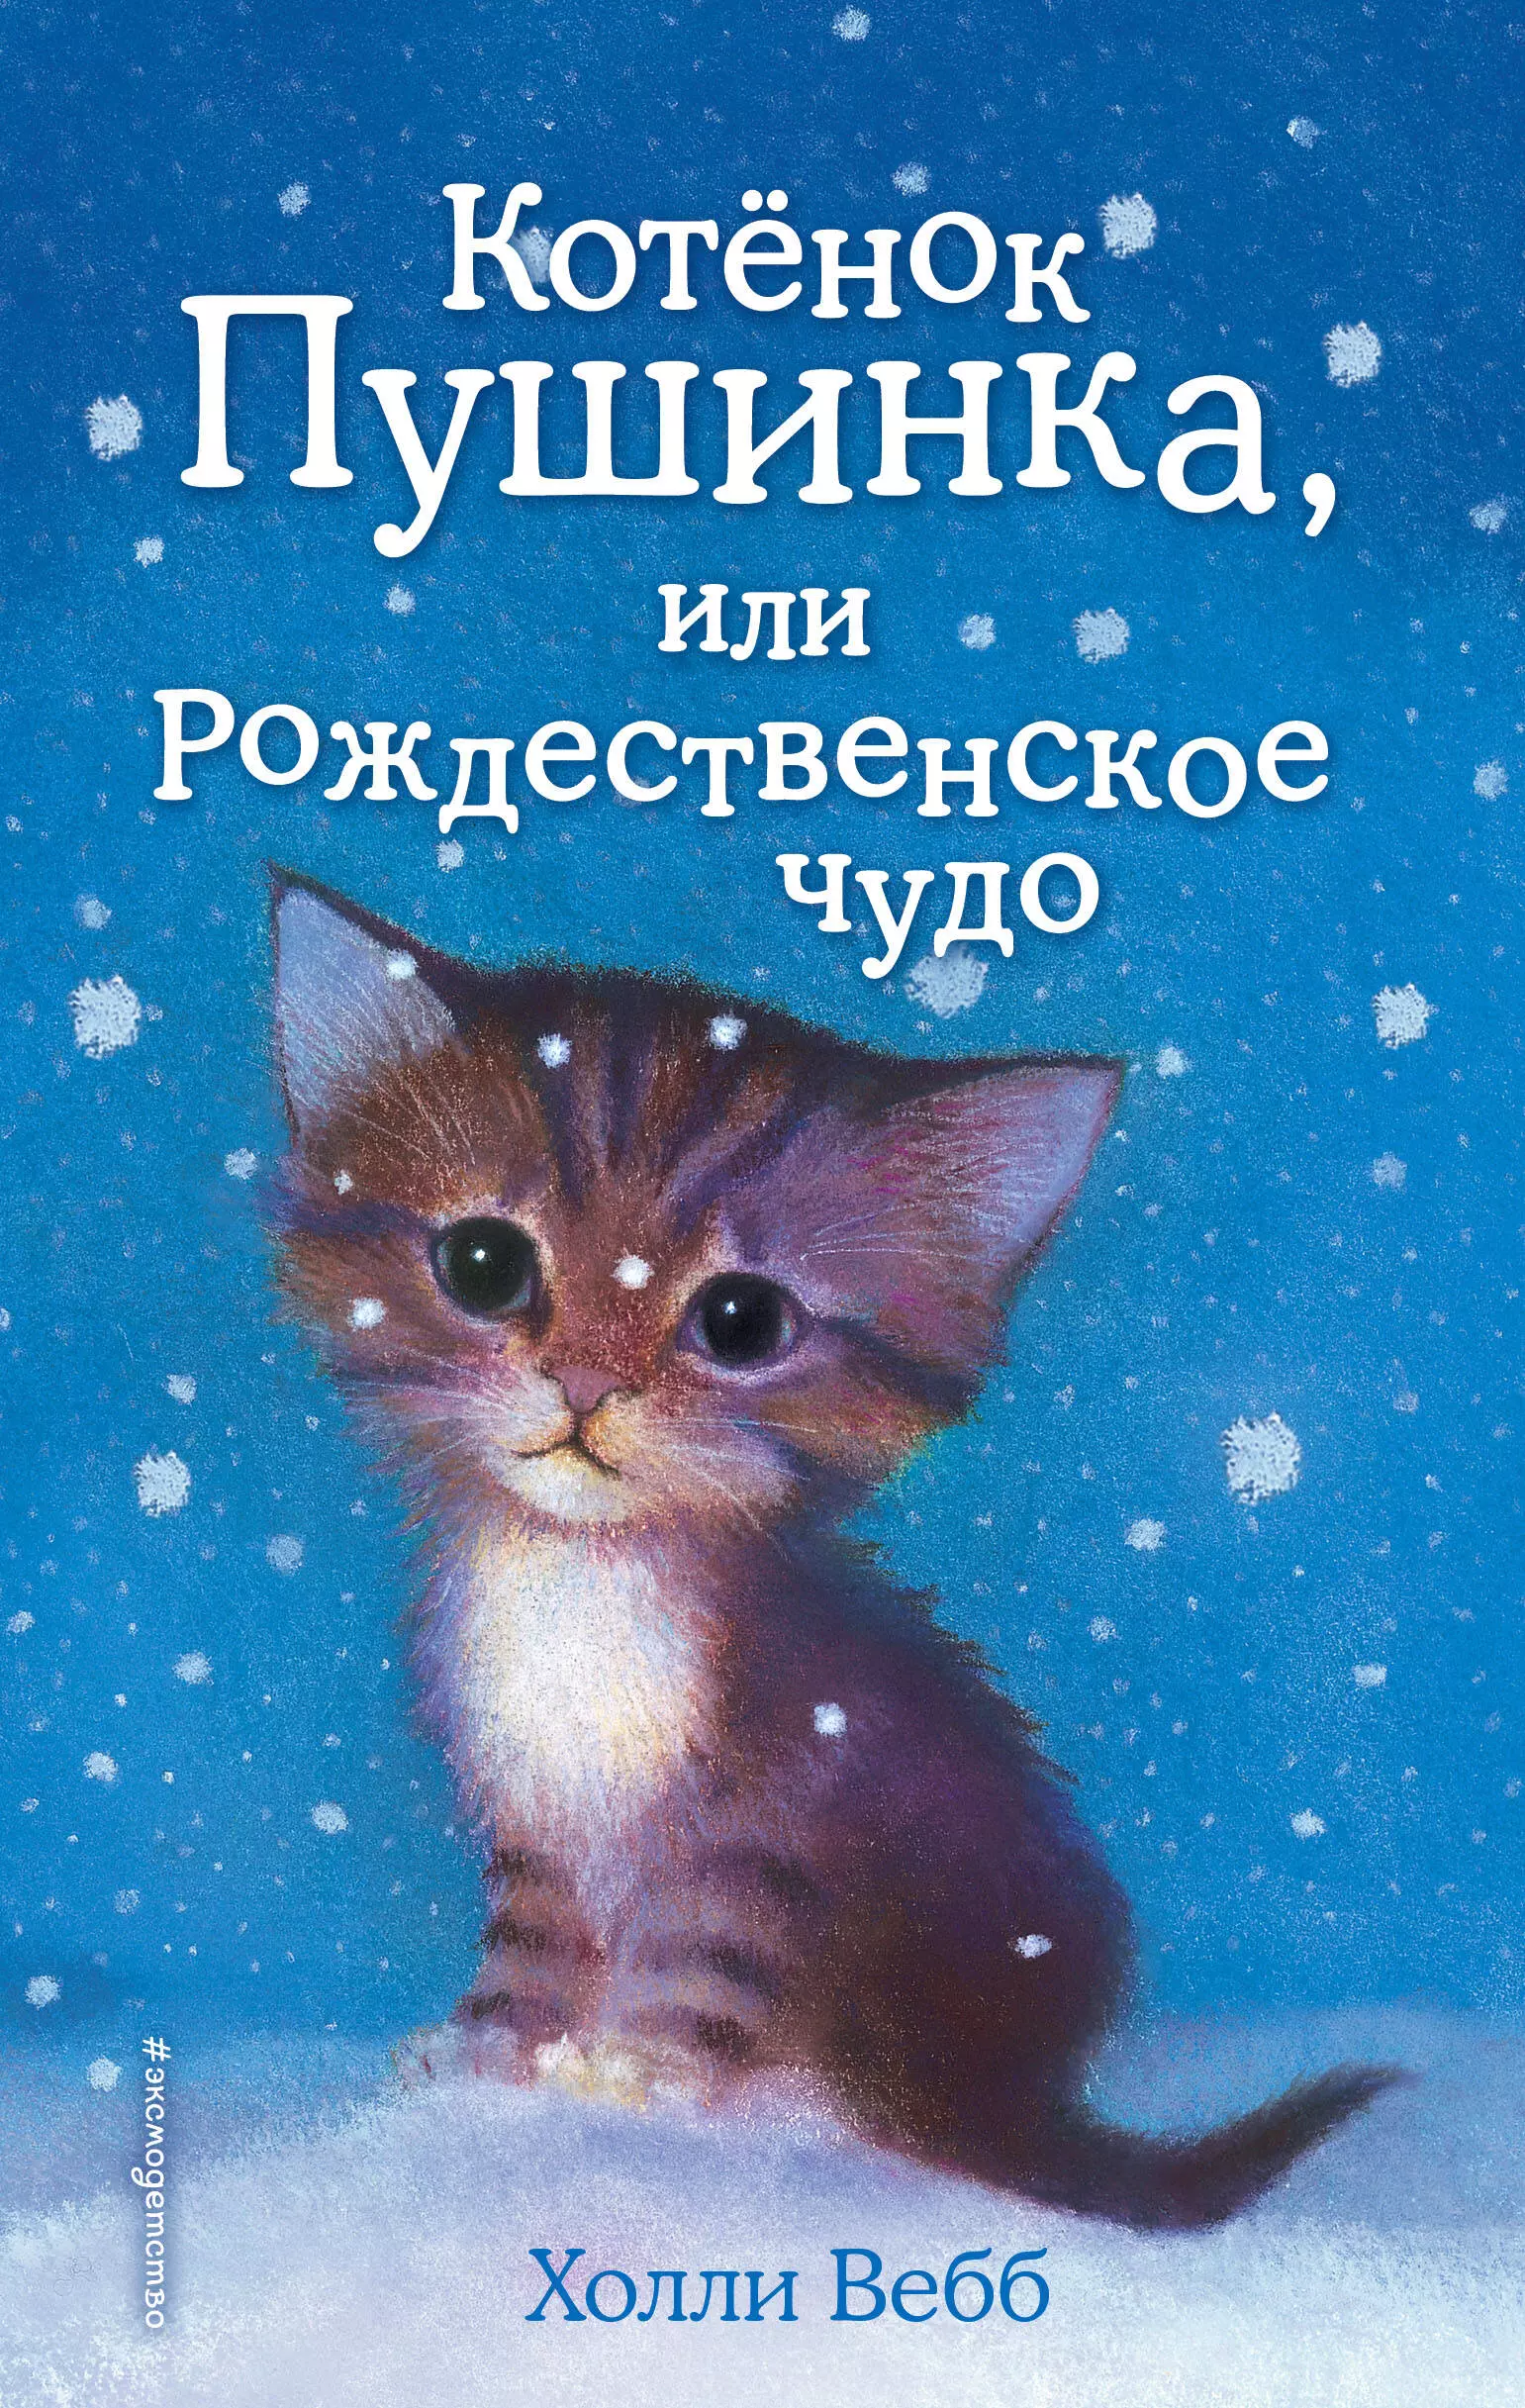 Котёнок Пушинка, или Рождественское чудо: повесть котёнок пушинка или рождественское чудо выпуск 4 вебб х